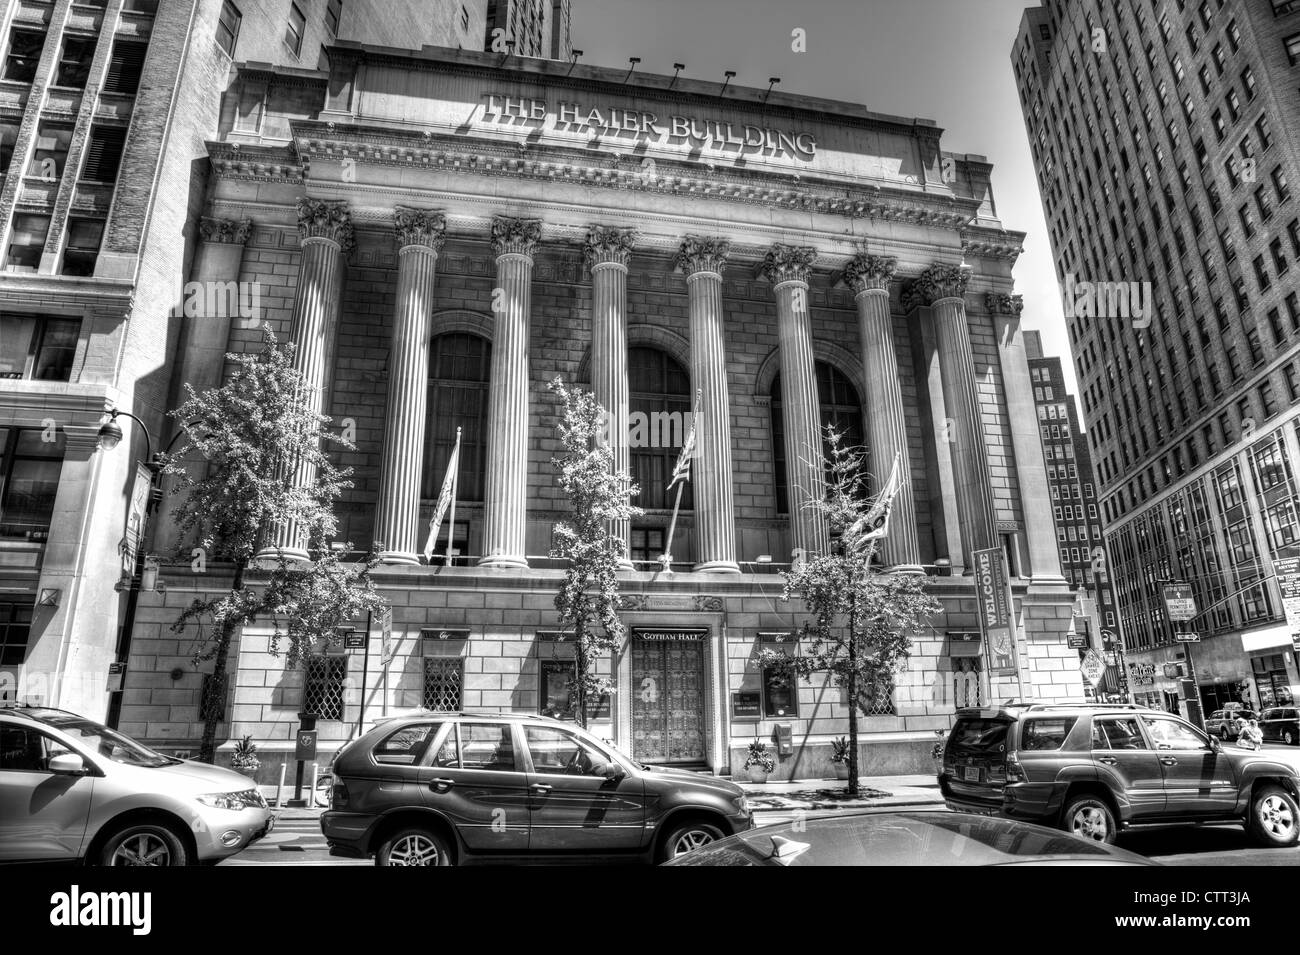 Haier Building / Gotham Hall Greenwich Savings Bank Manhattan New York City ikonischen Gebäude Fassade außen vorne Stockfoto